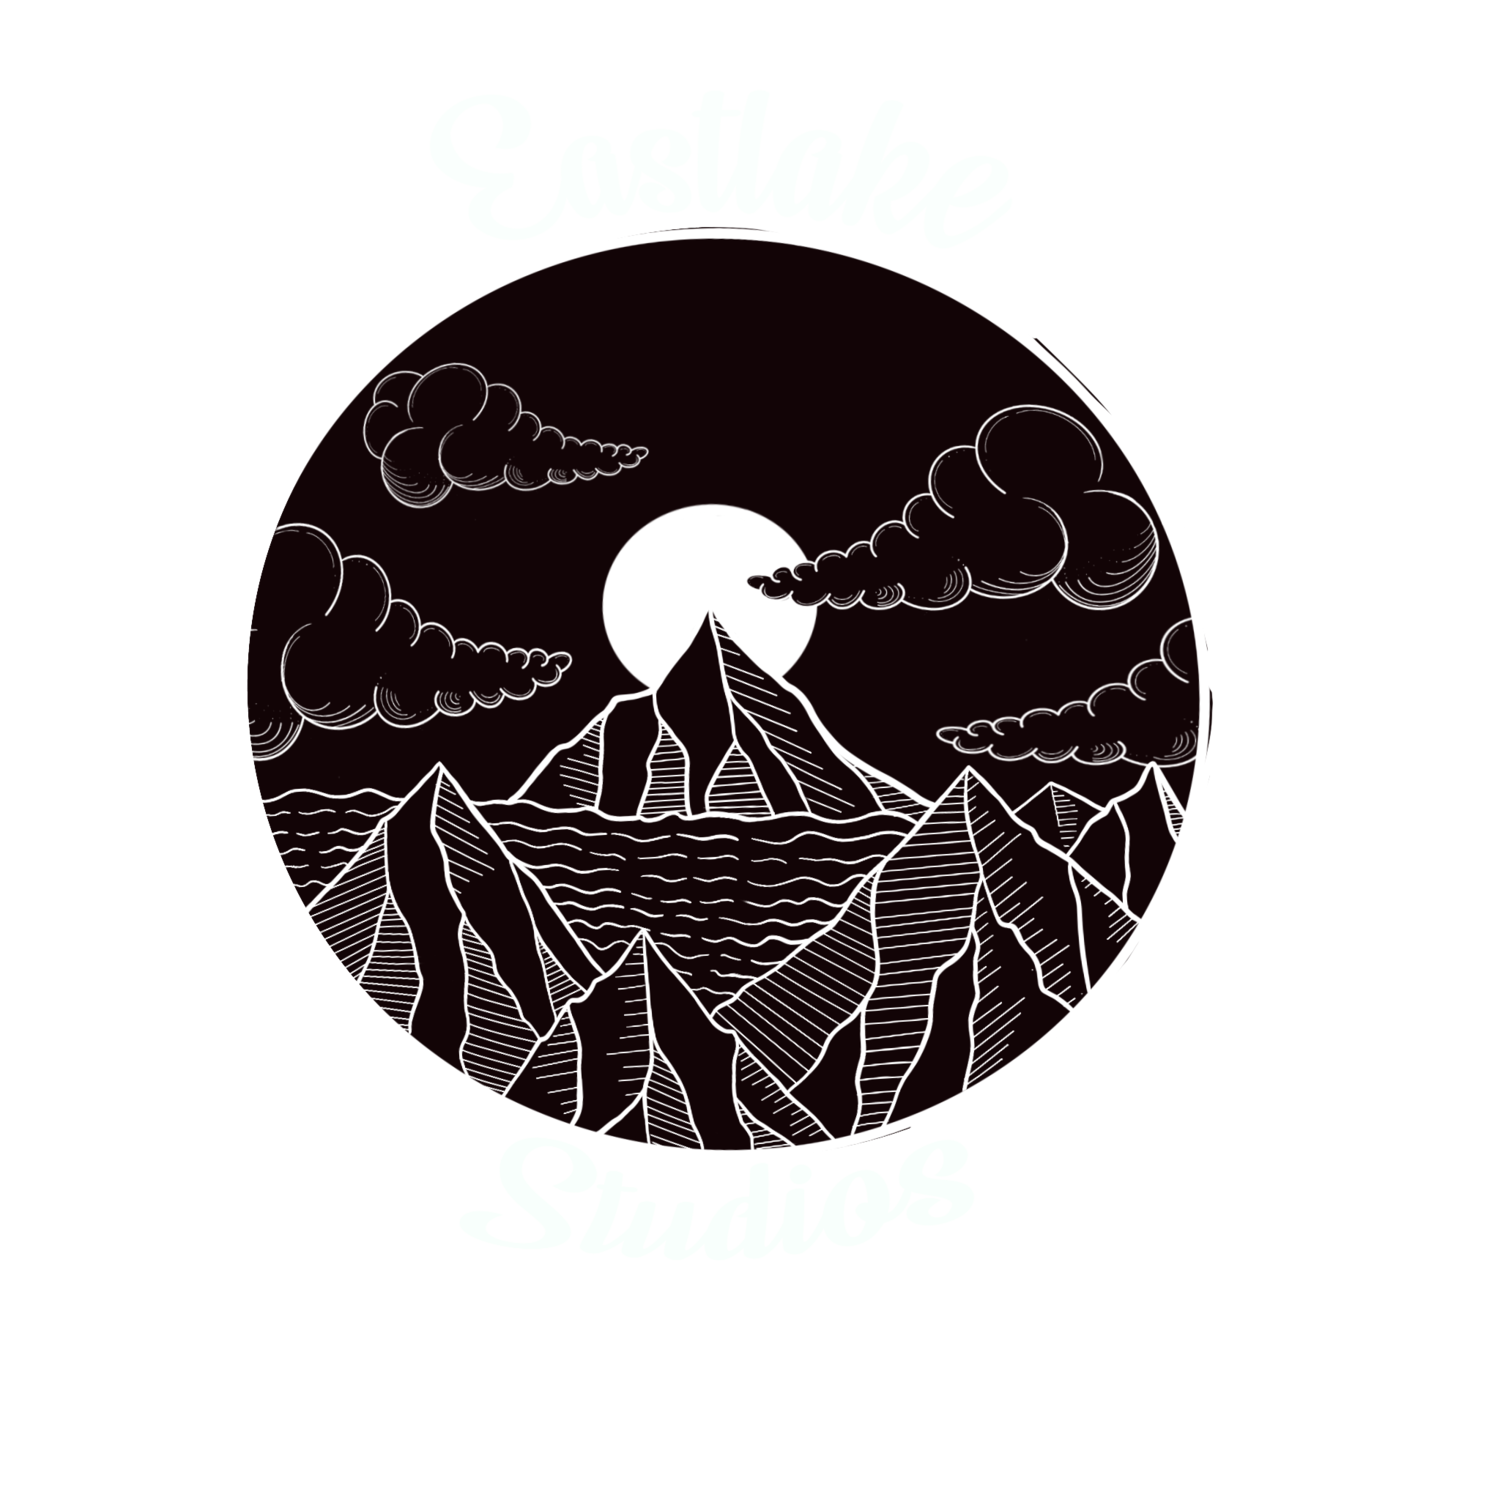 EastLake Studios